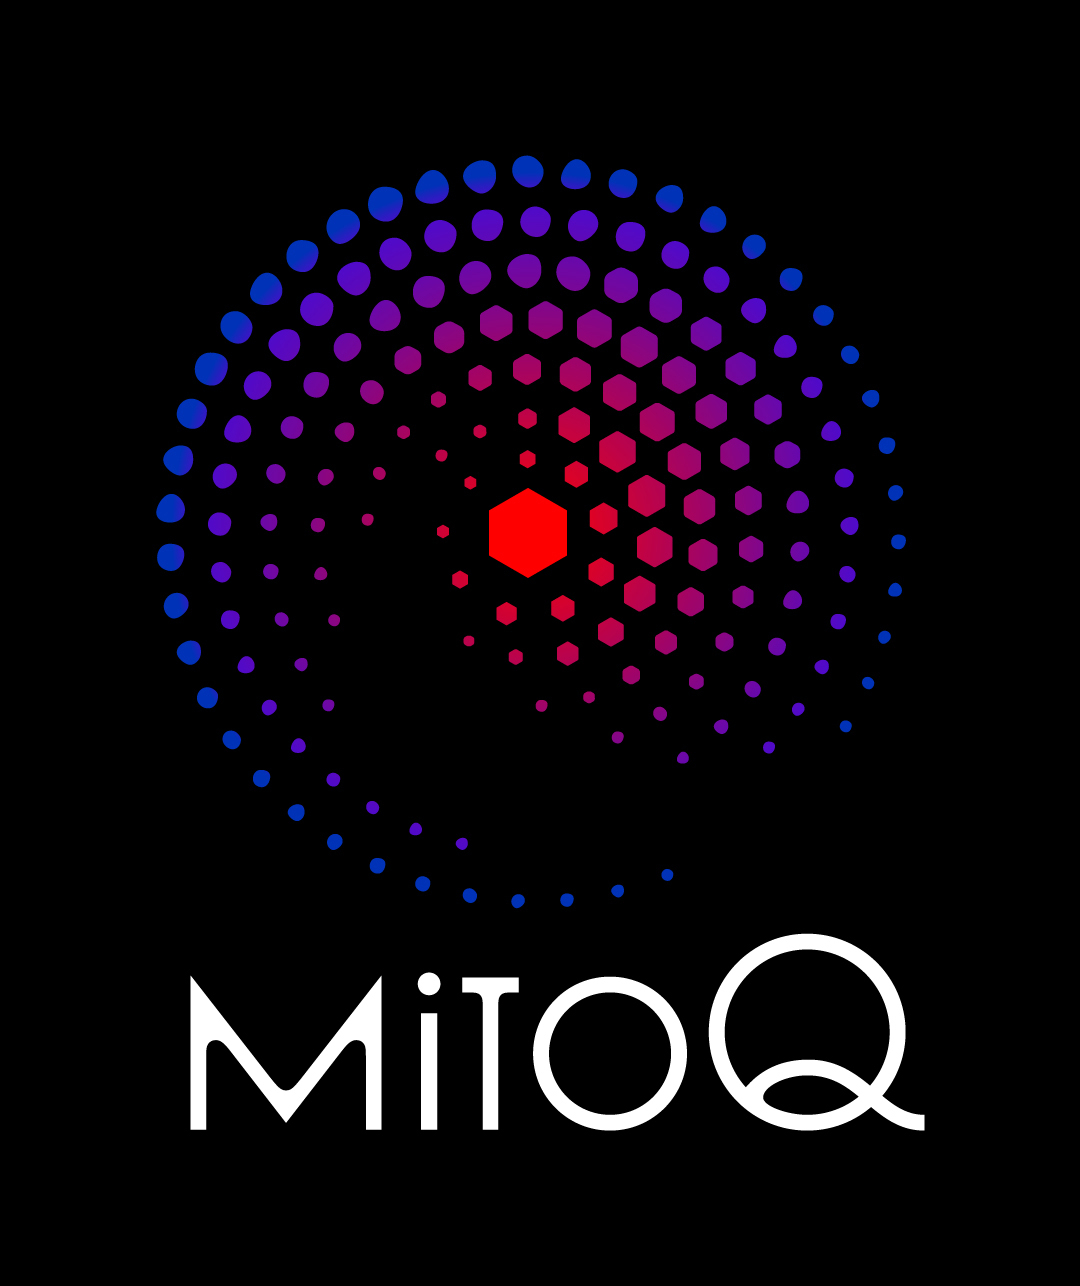 MitoQ MasterBrandMarque Portrait RGB